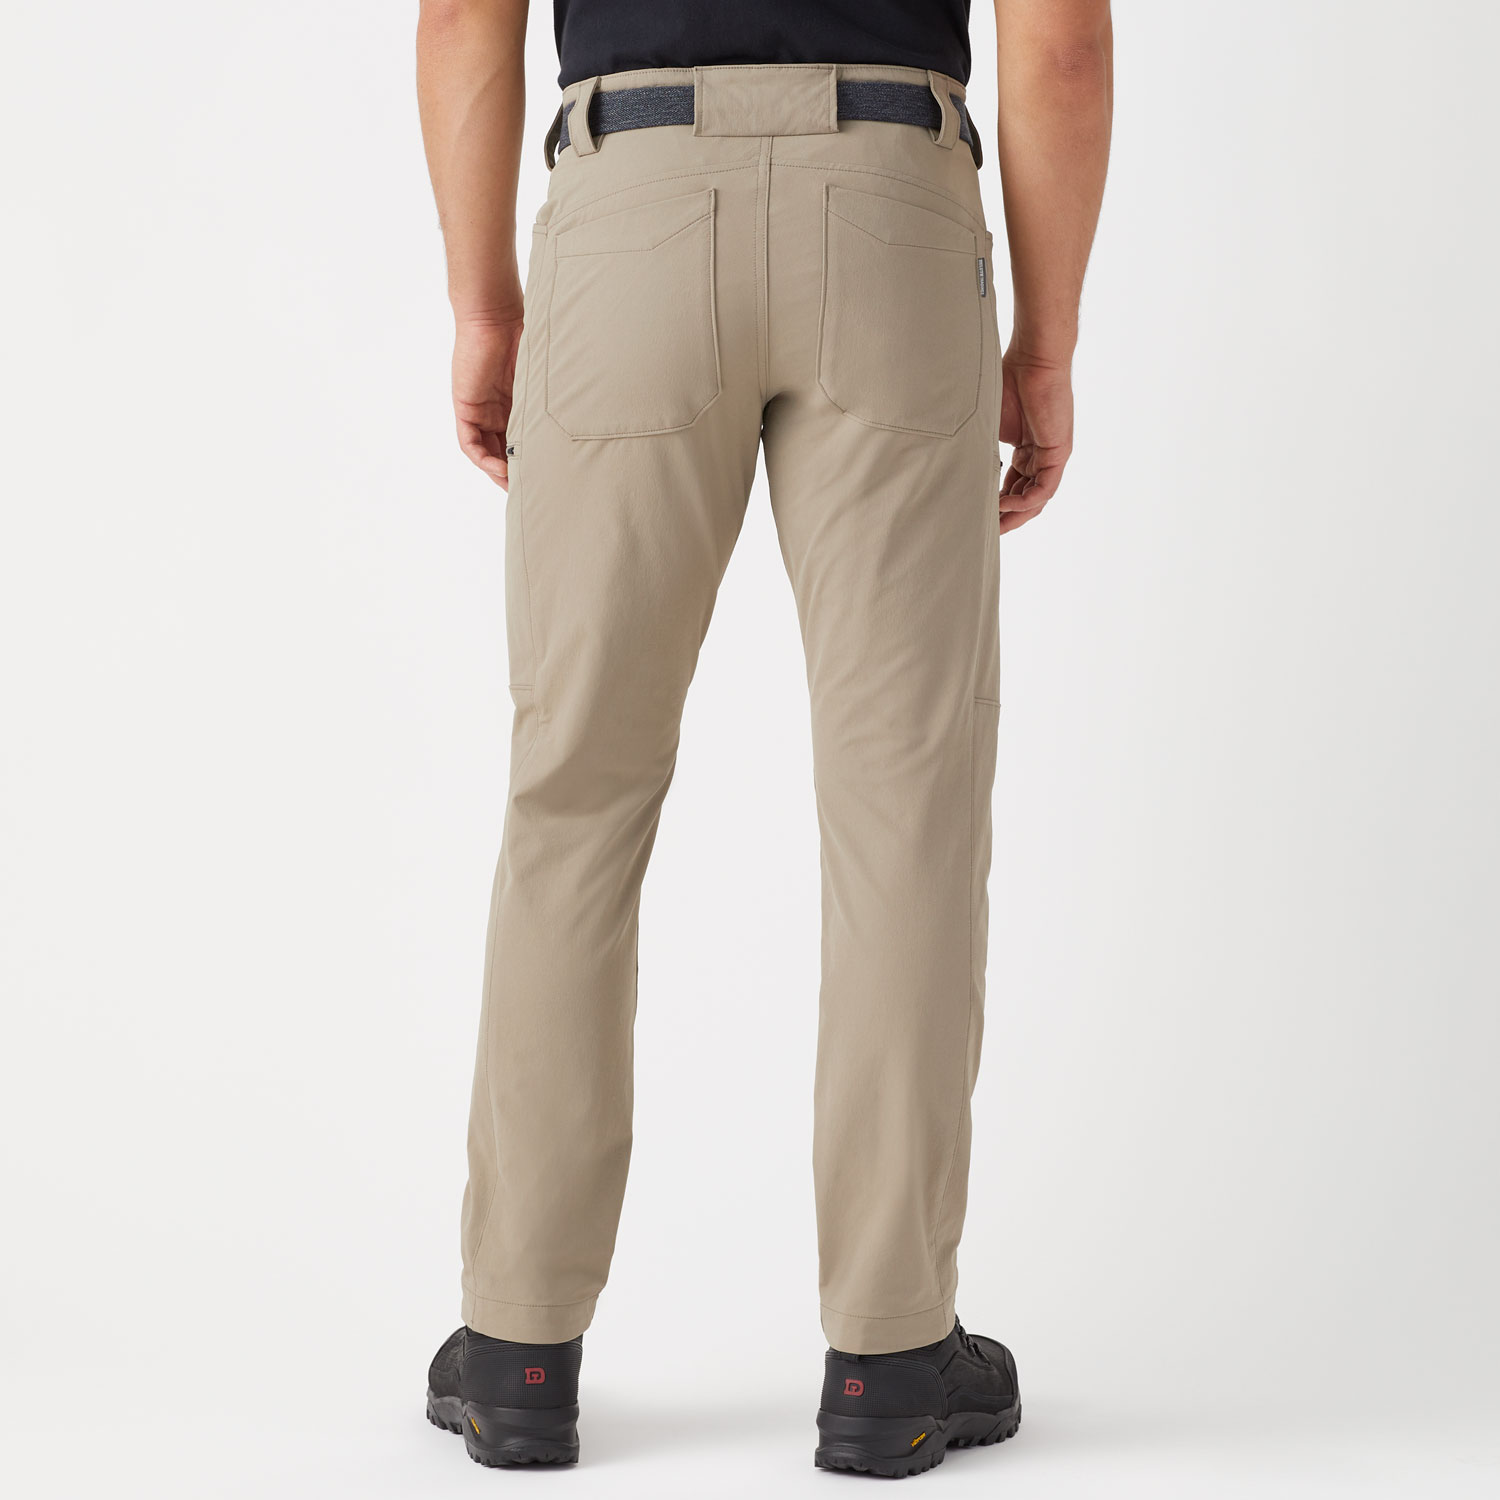 Men's Slim Fit Flexpedition Cargo Pants